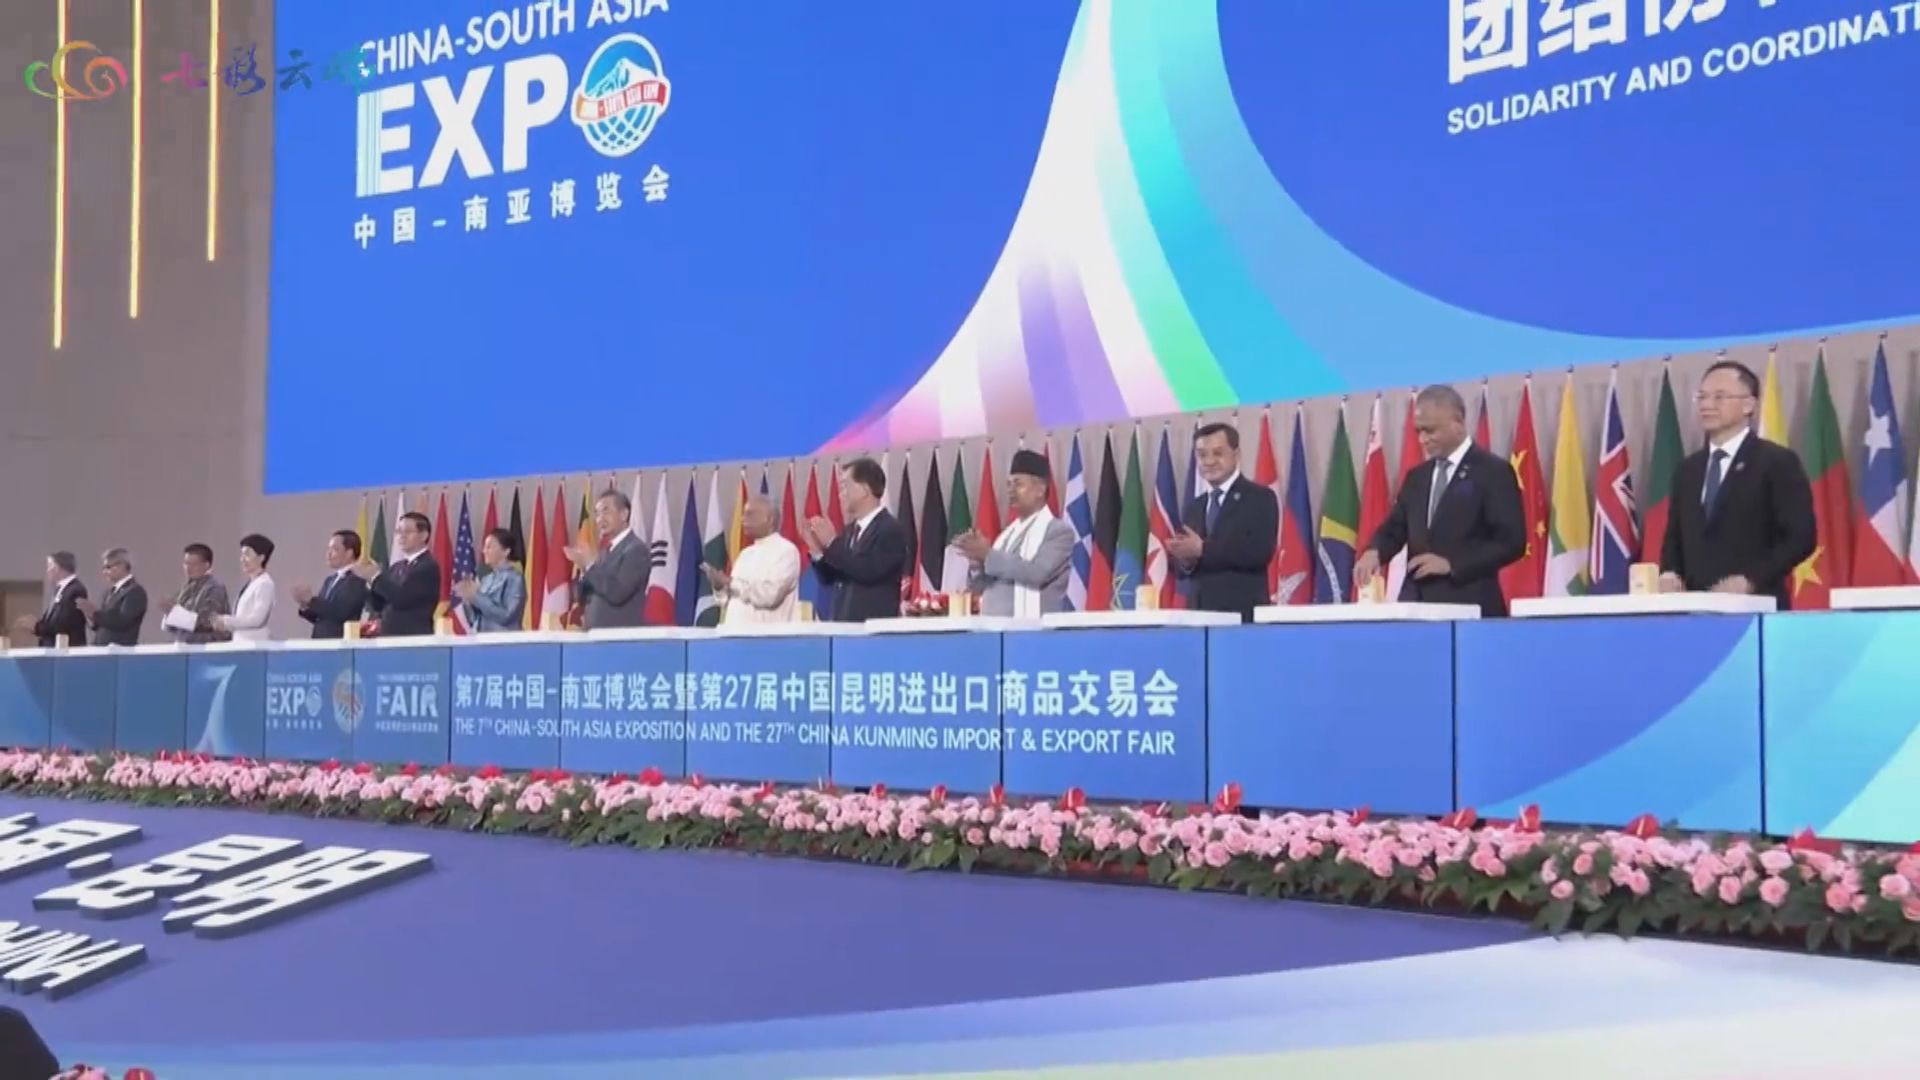 中國—南亞博覽會開幕 王毅稱中方願與南亞國家加強團結協作